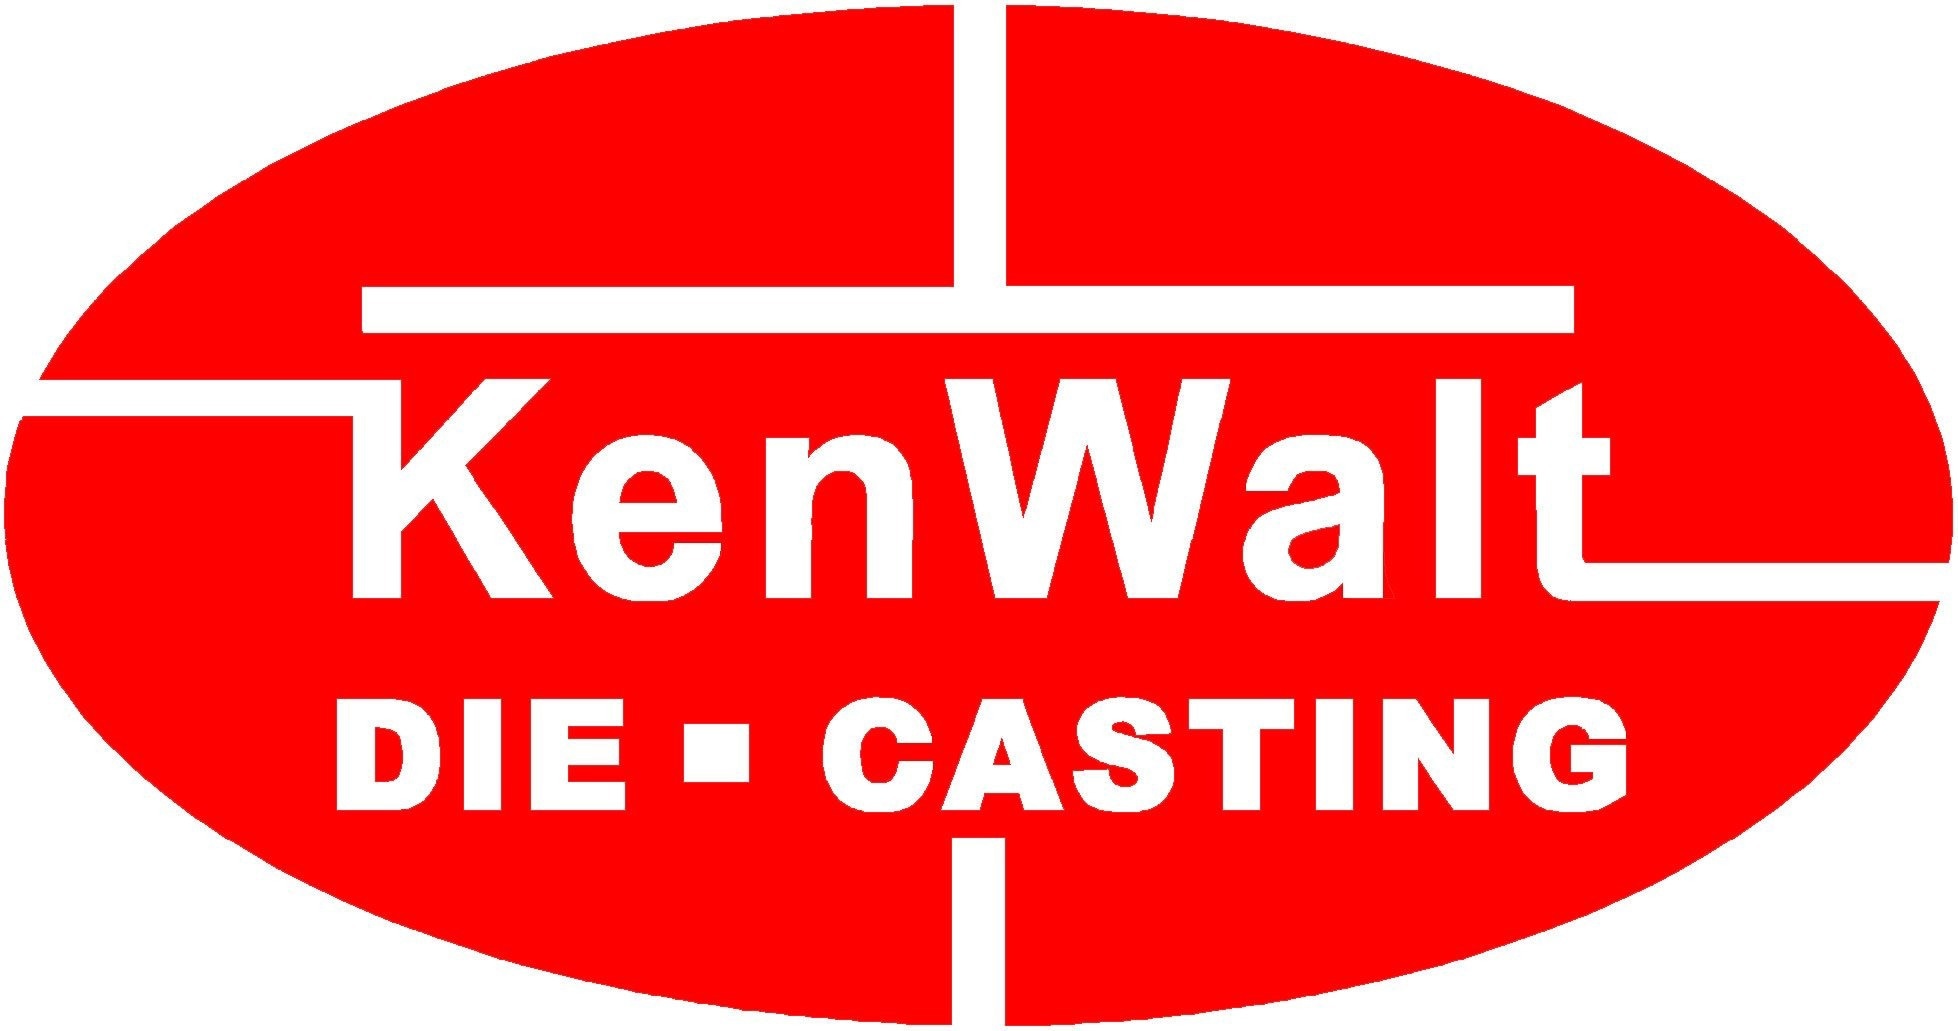 KenWalt Die Casting Company